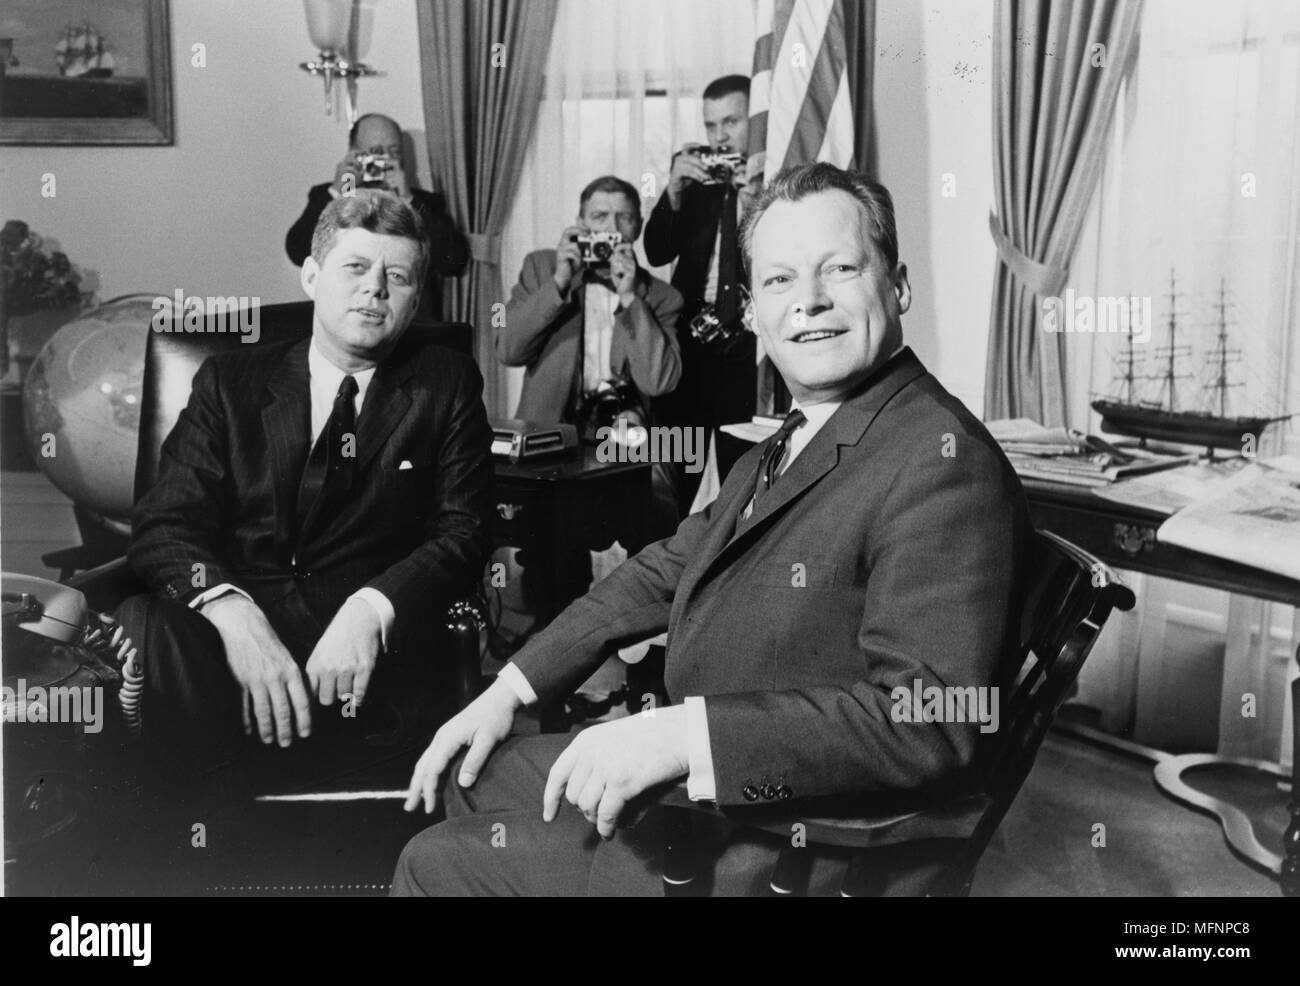 Präsident John F. Kennedy und Willy Brandt, Bürgermeister von Berlin, im Weißen Haus, 13. März 1961. Fotografin Marion S. Trikosko. Stockfoto